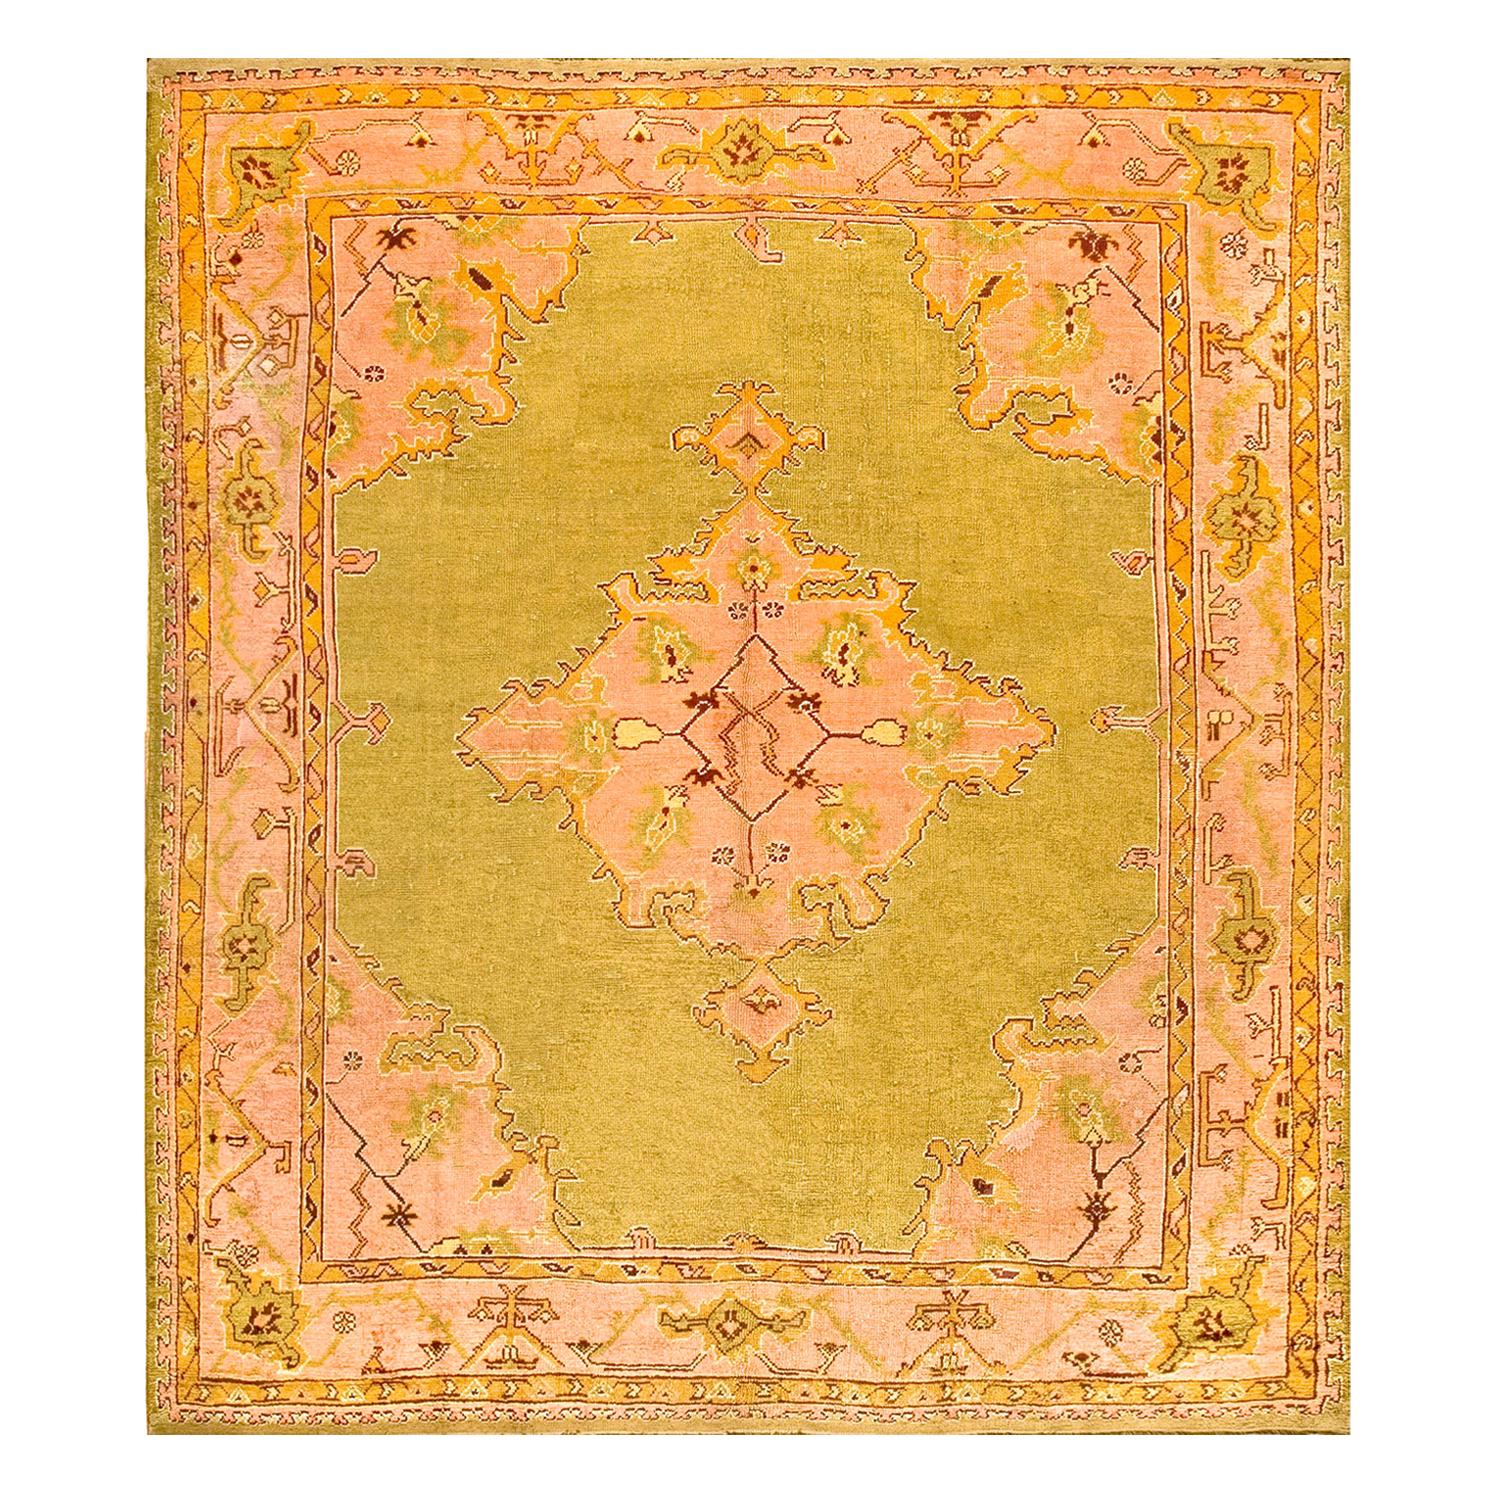 Türkischer Oushak-Teppich des frühen 20. Jahrhunderts ( 10'8" x 11'10" - 325 x 360)